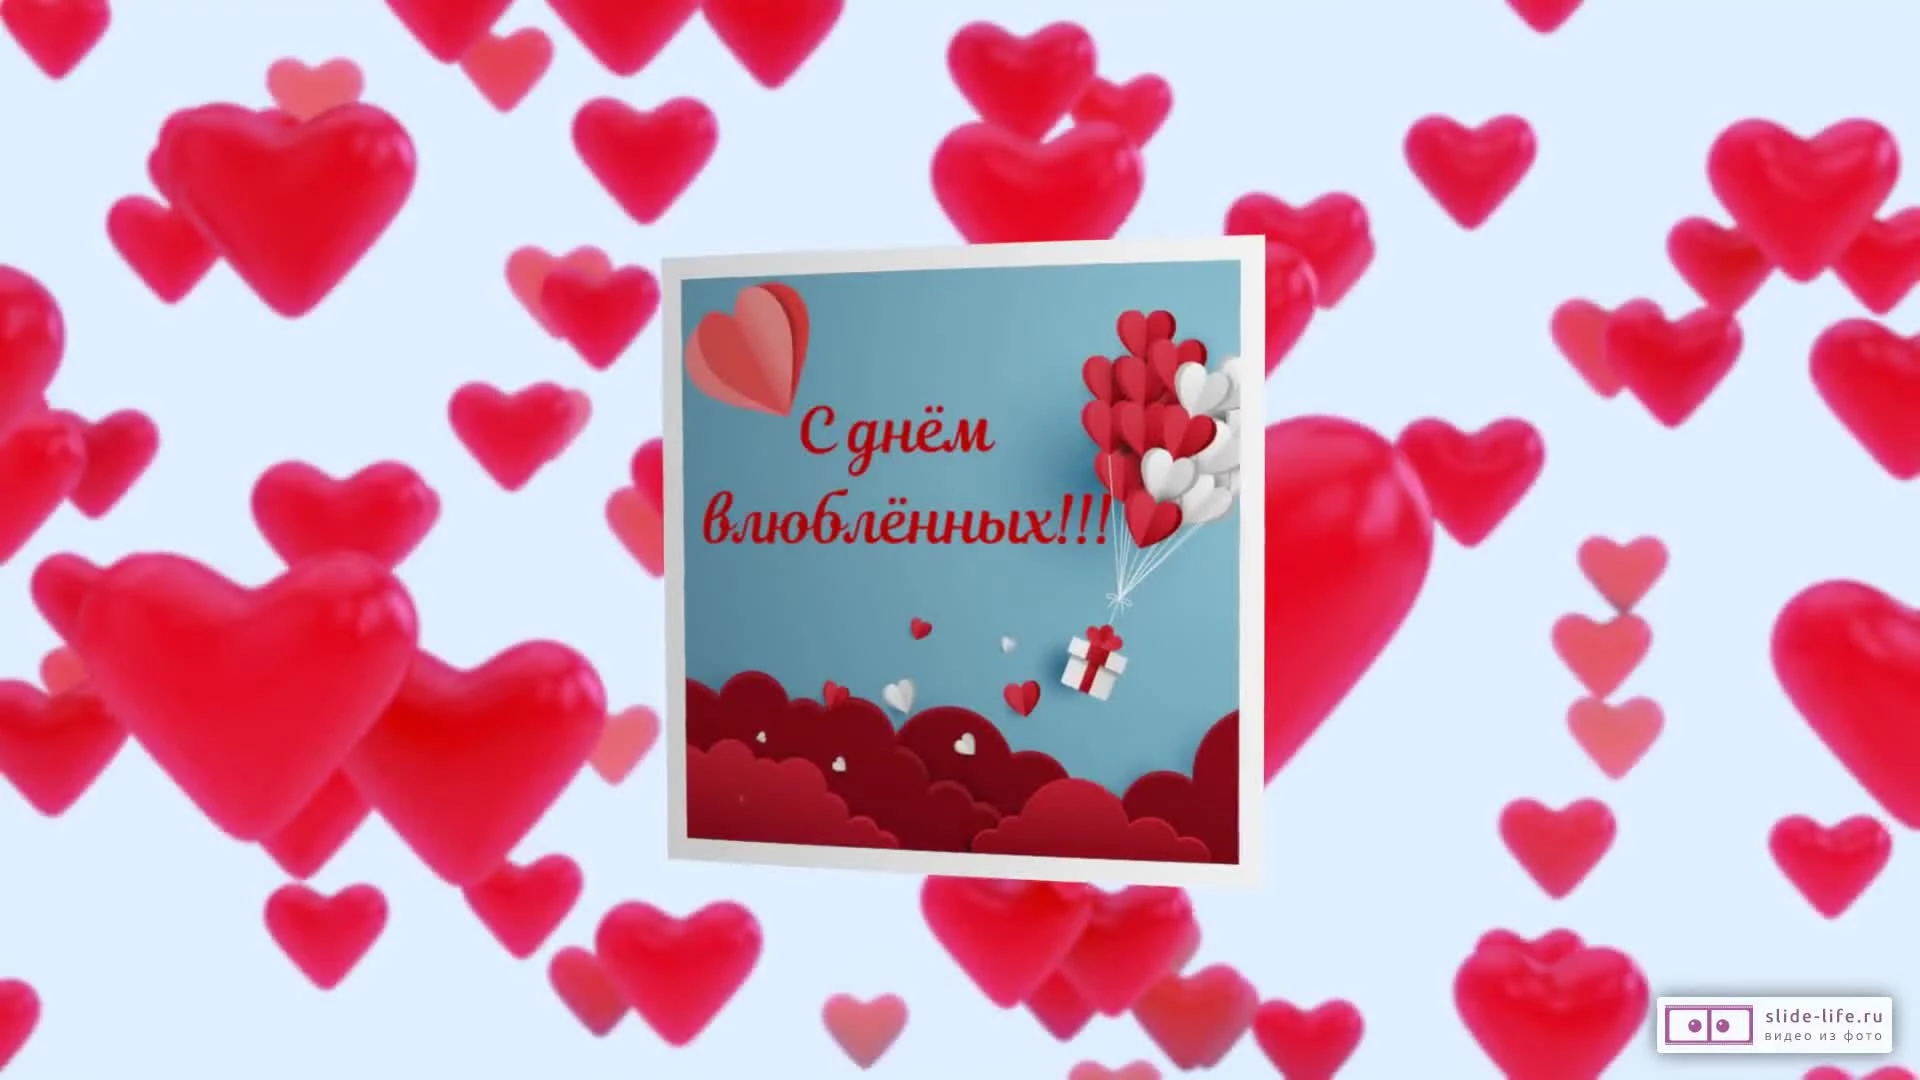 💏 С днем святого Валентина - видео открытка поздравление для всех влюбленных